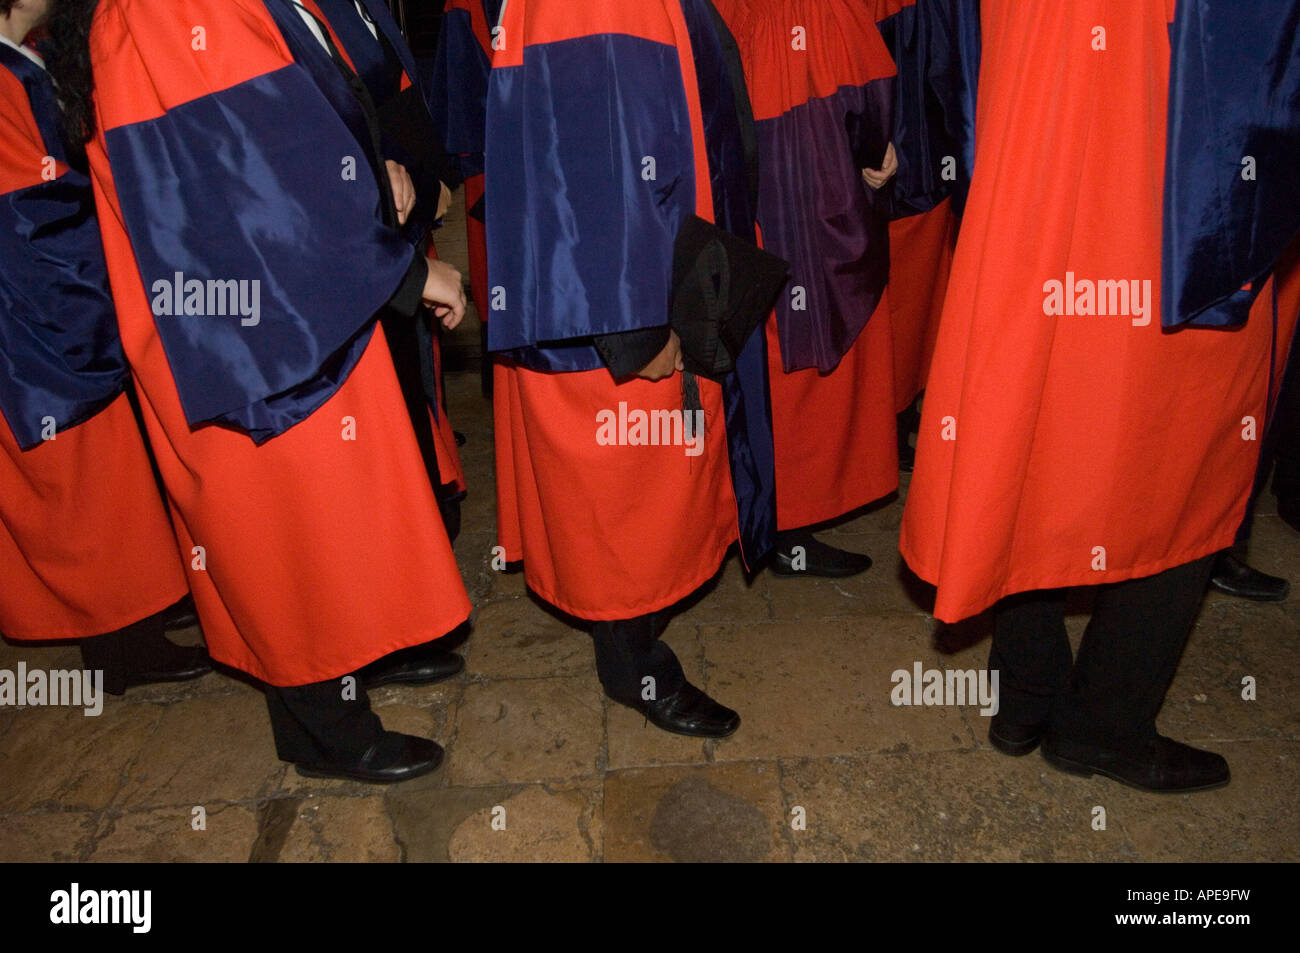 Le degré cérémonie à Oxford un moment de célébration et de réflexion lorsque les étudiants obtiennent leur diplôme Banque D'Images